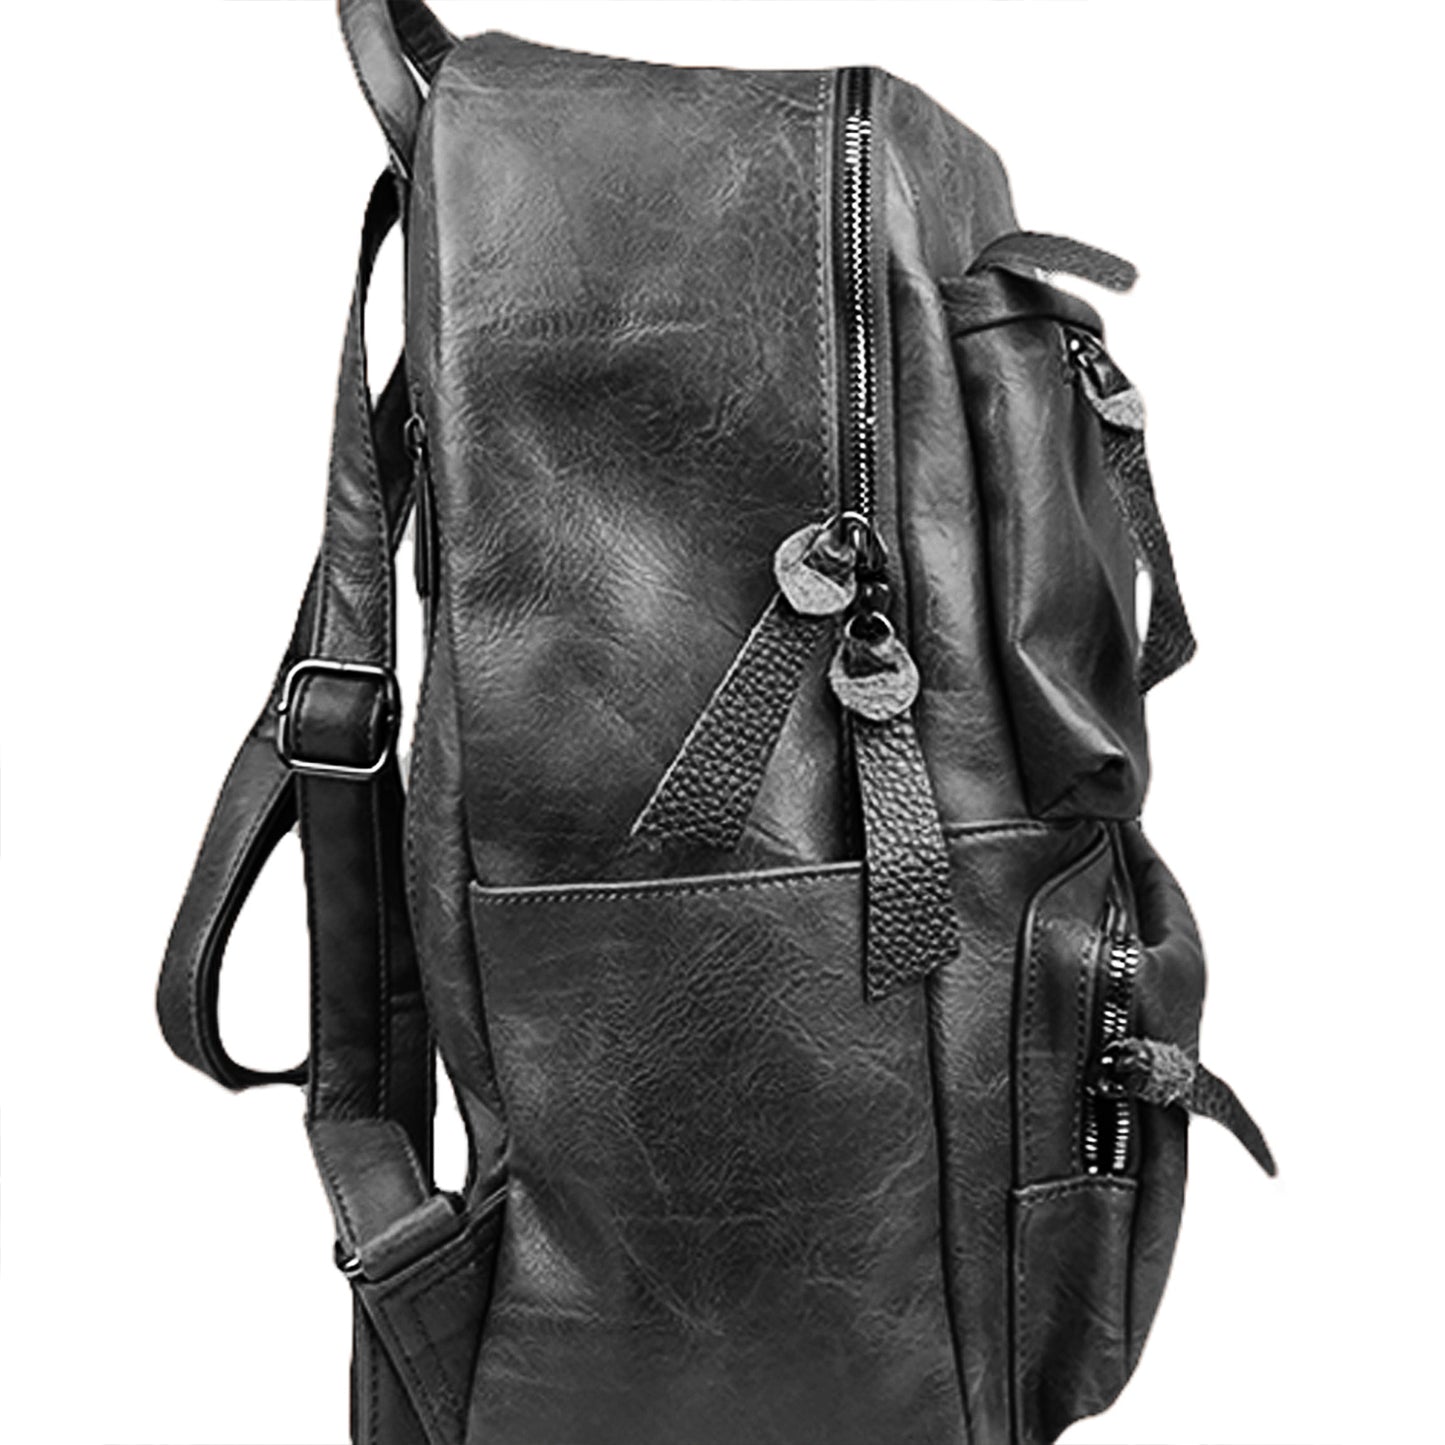 Τσάντα Backpack Μαύρη 0501023 BLACK